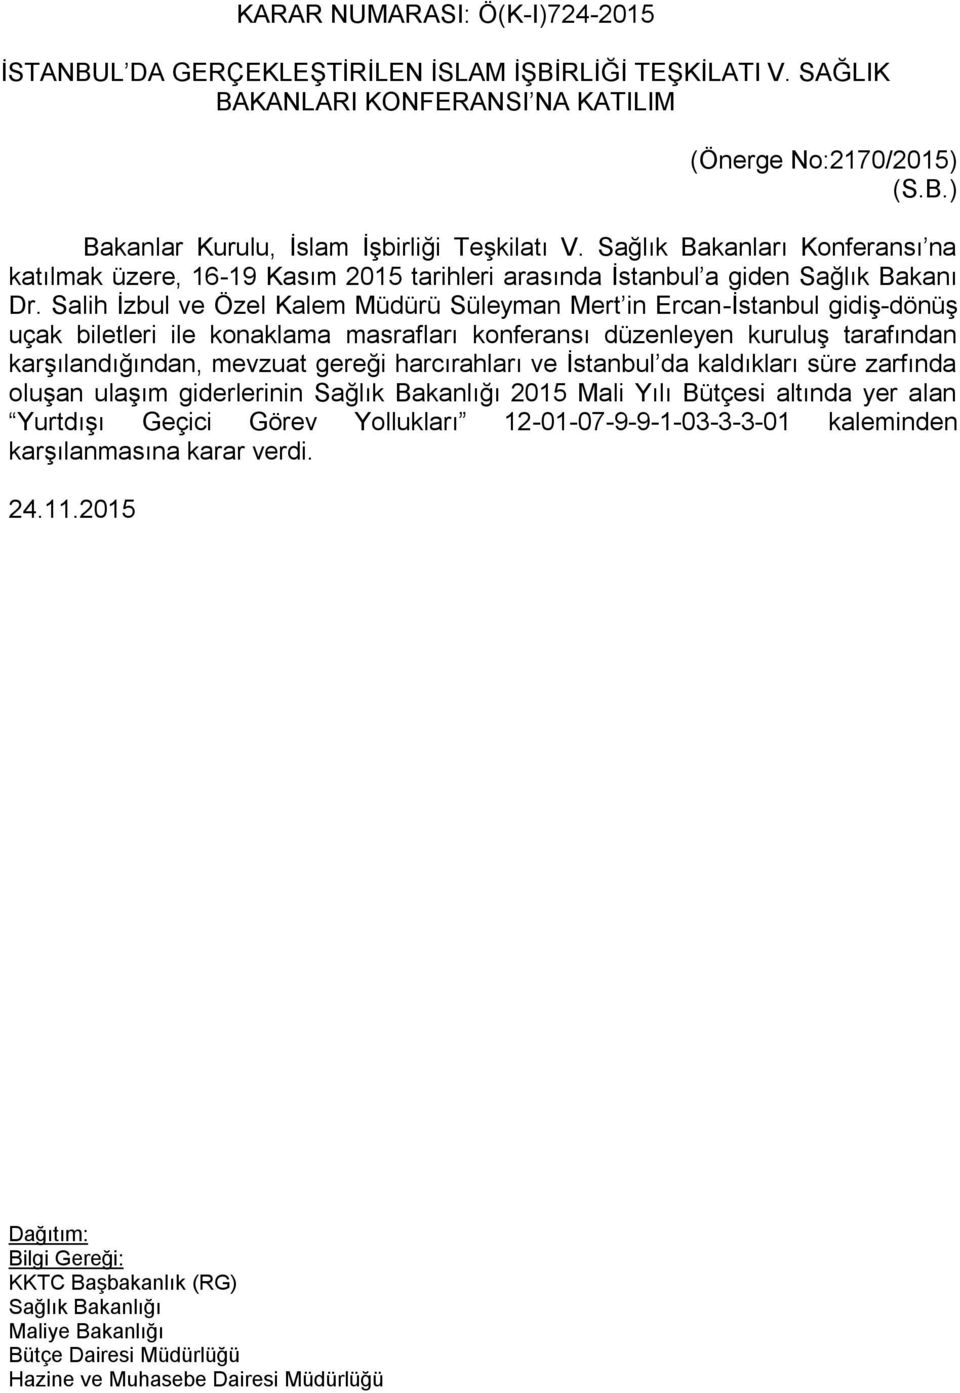 Salih İzbul ve Özel Kalem Müdürü Süleyman Mert in Ercan-İstanbul gidiş-dönüş uçak biletleri ile konaklama masrafları konferansı düzenleyen kuruluş tarafından karşılandığından, mevzuat gereği